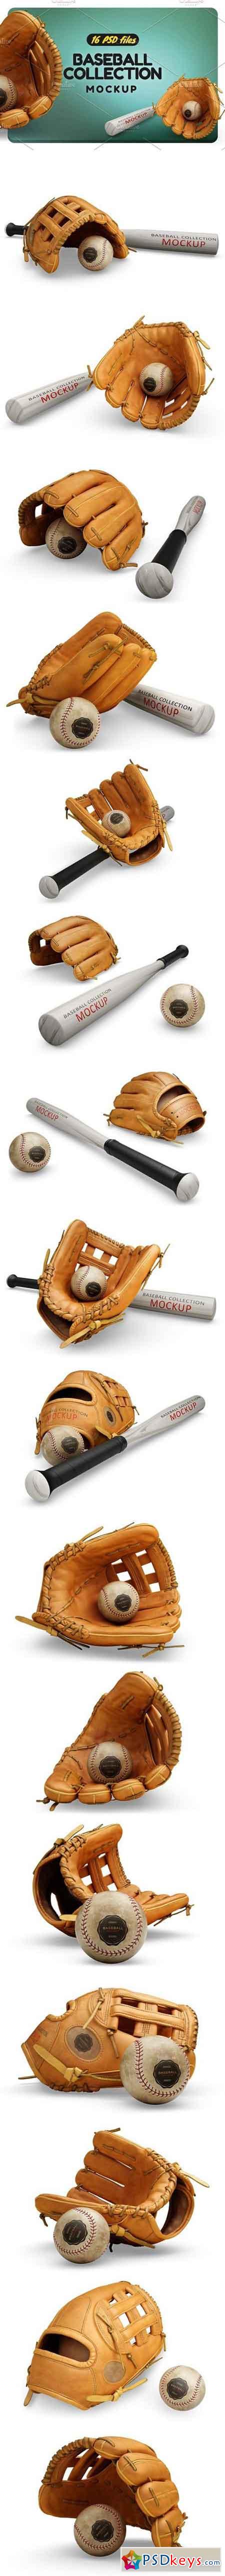 Baseball Collection Mockup 2133917